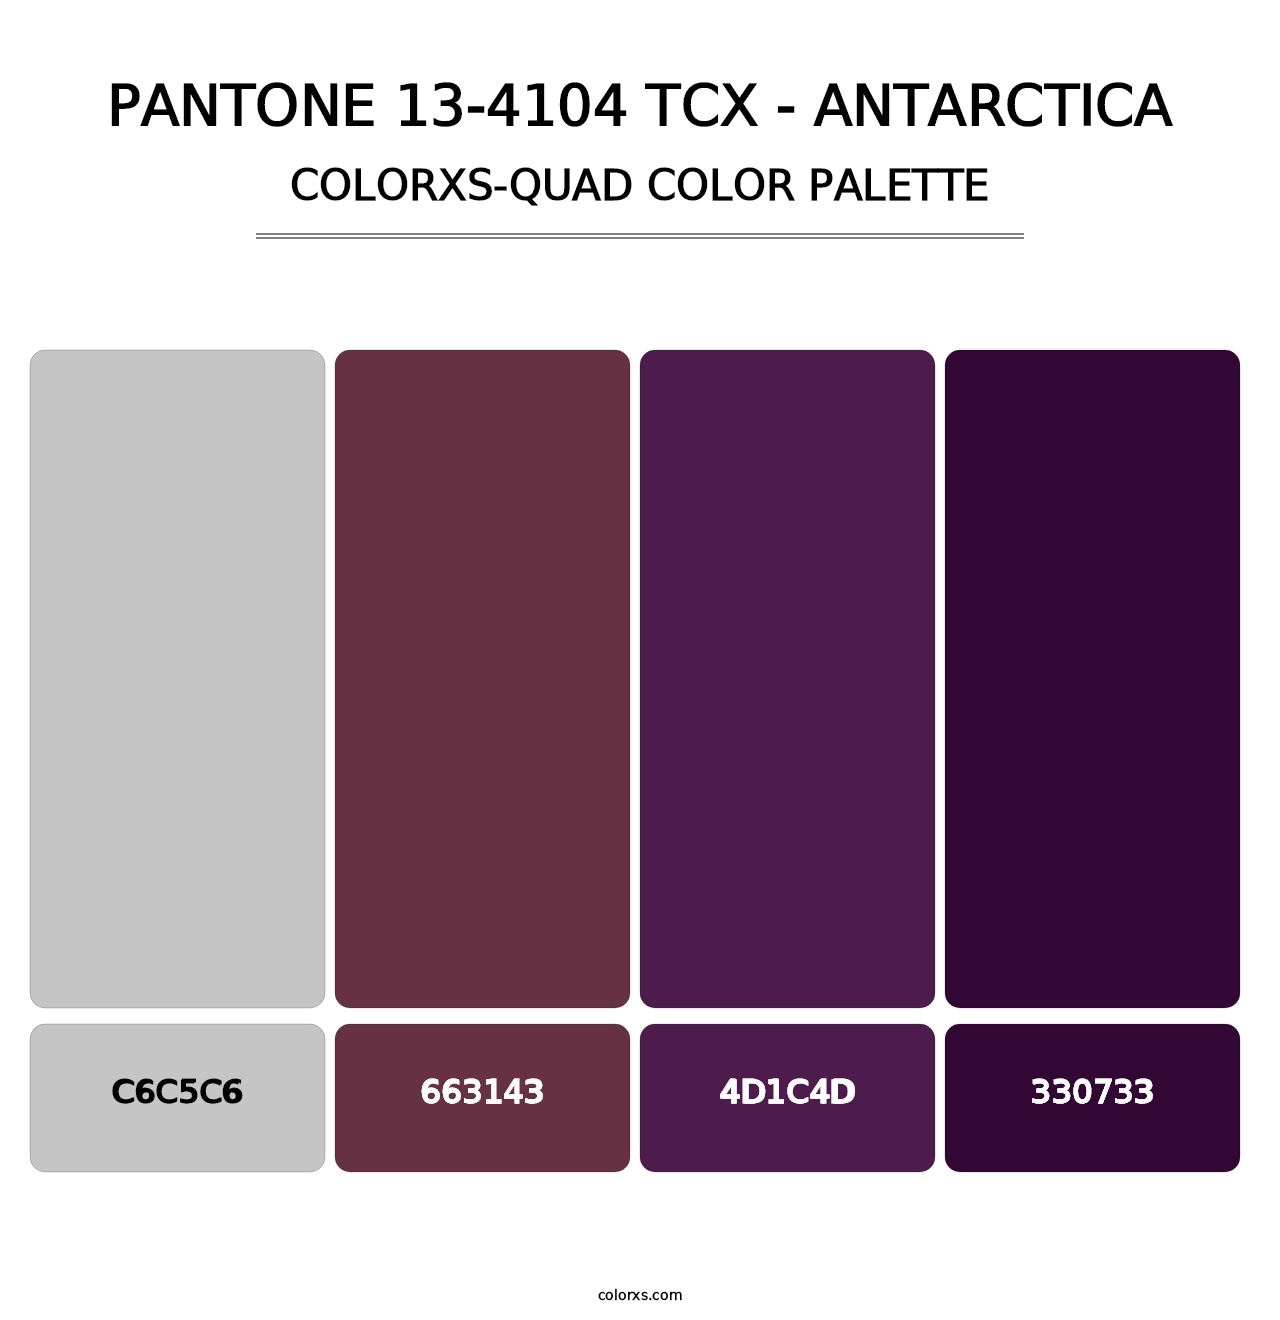 PANTONE 13-4104 TCX - Antarctica - Colorxs Quad Palette